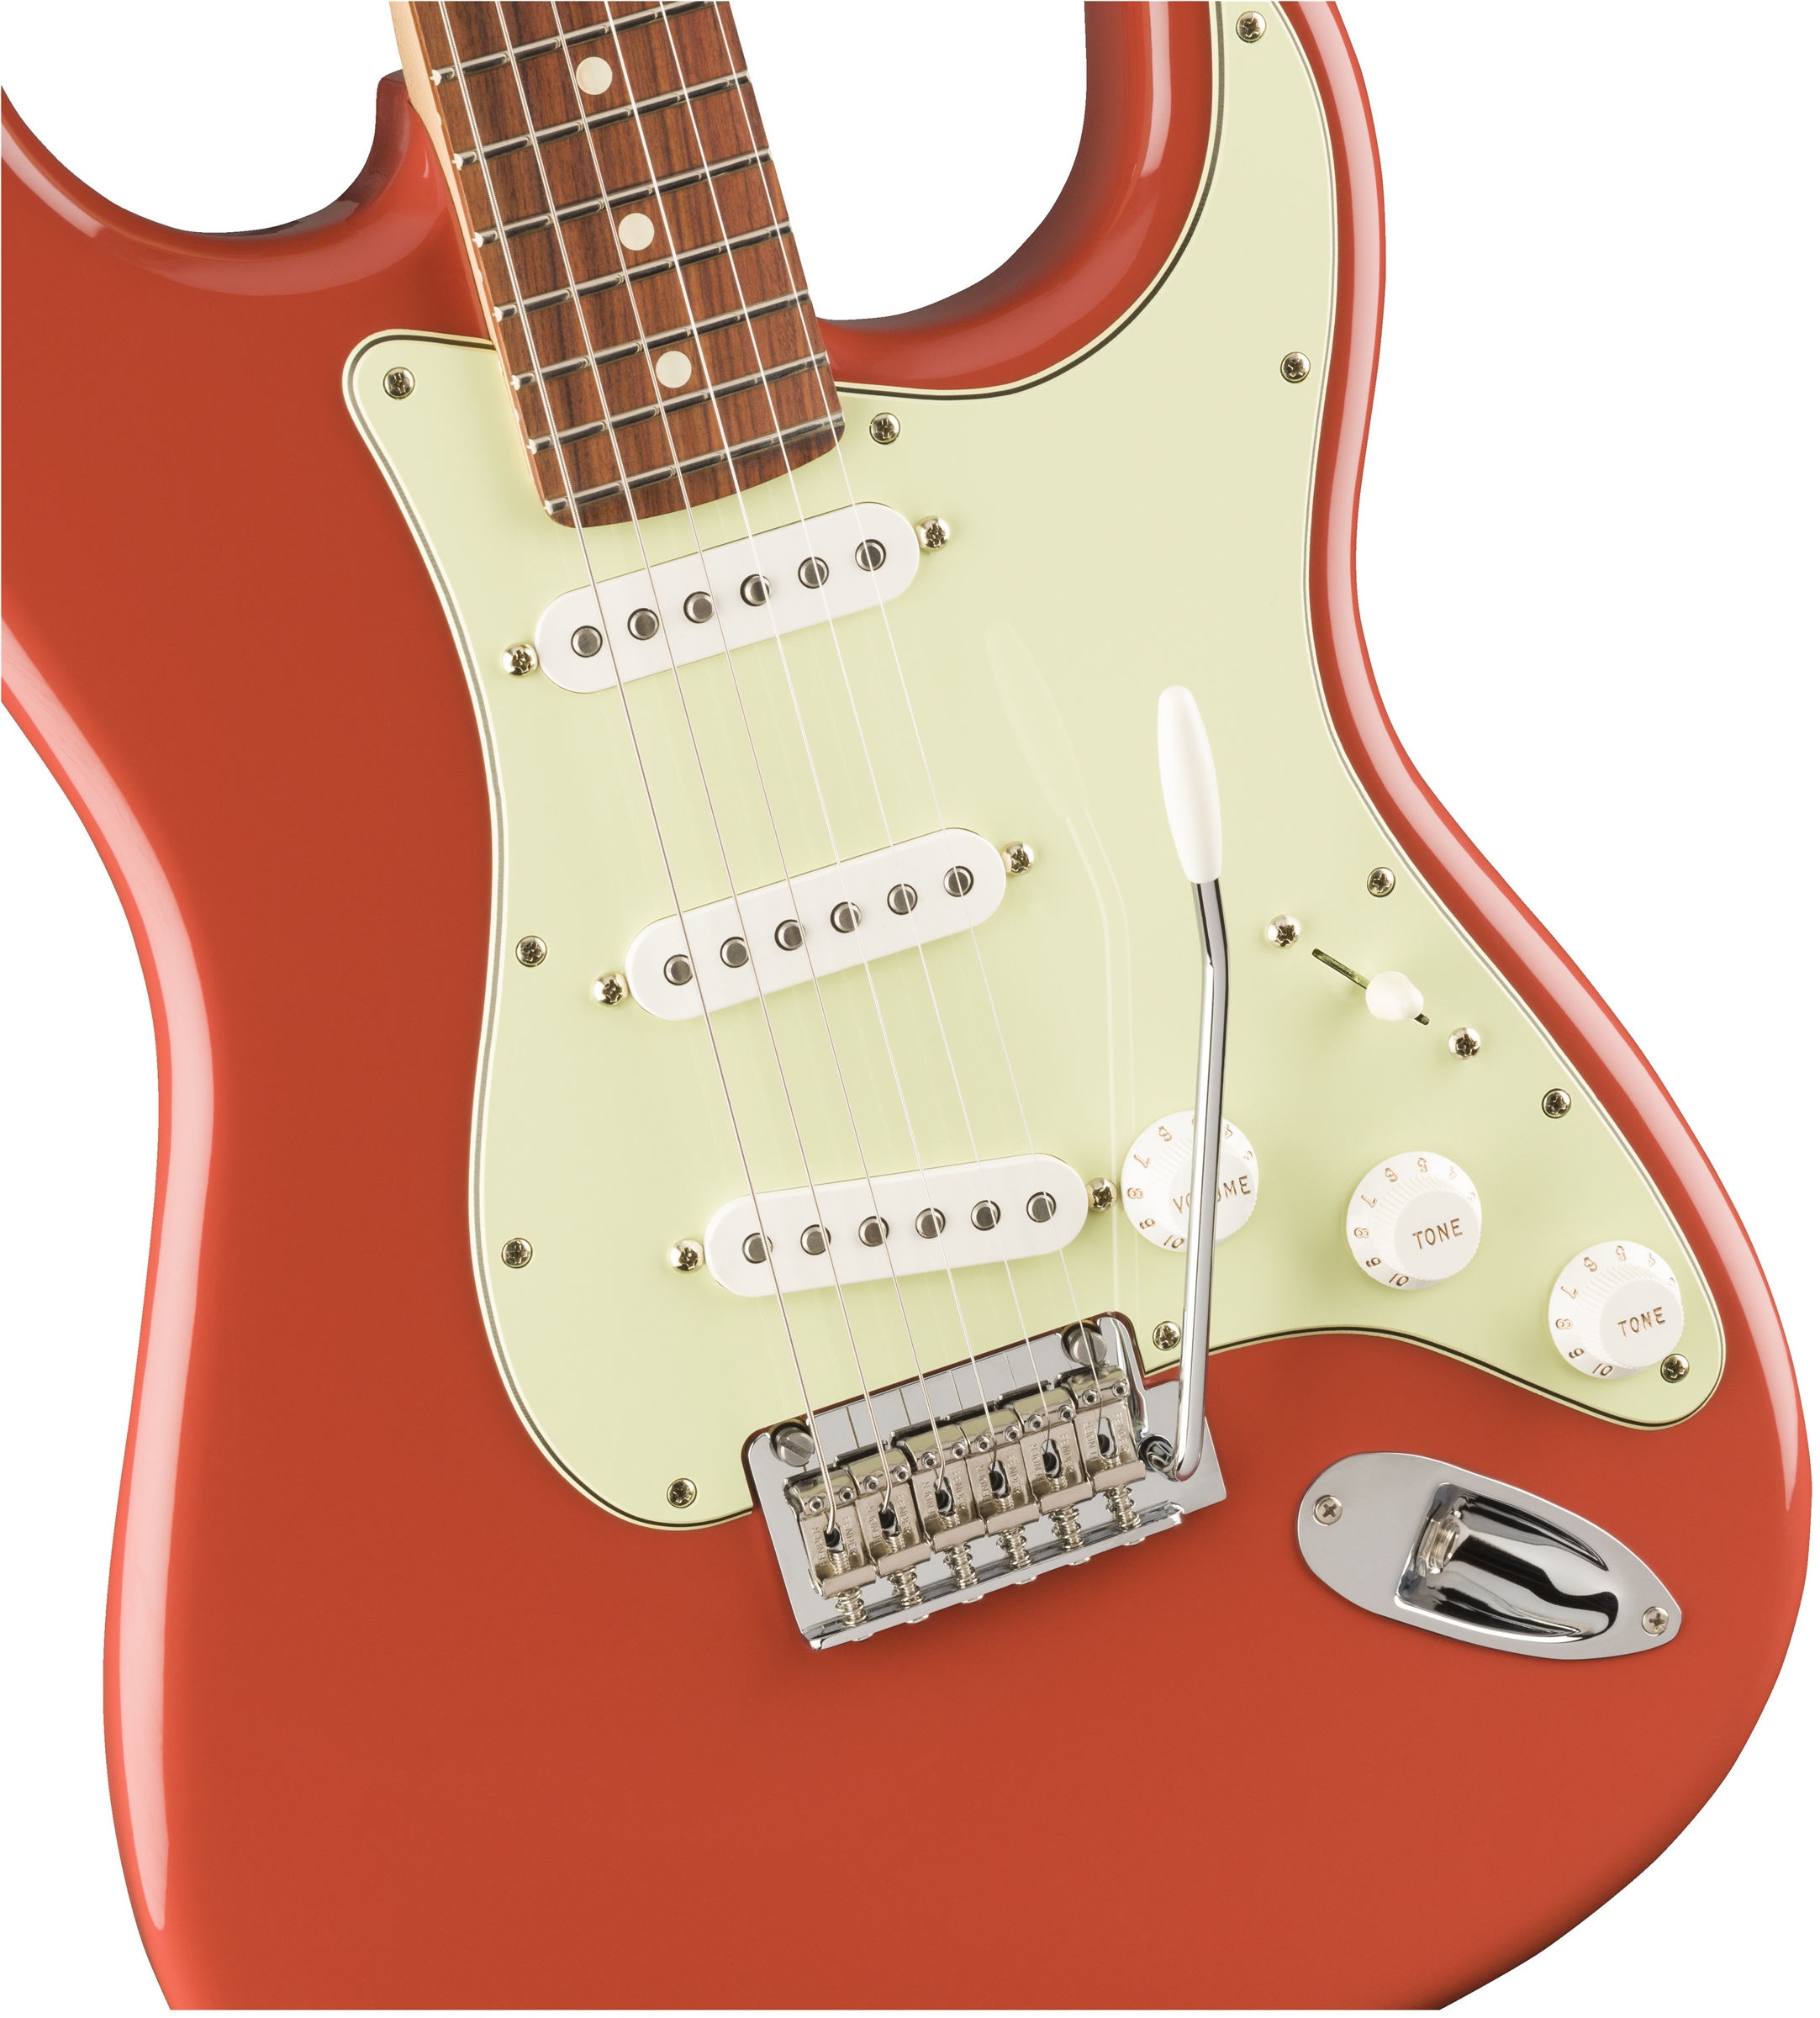 Fender Strat Player Ltd Mex 3s Trem Pf - Fiesta Red - Guitare Électrique Forme Str - Variation 2